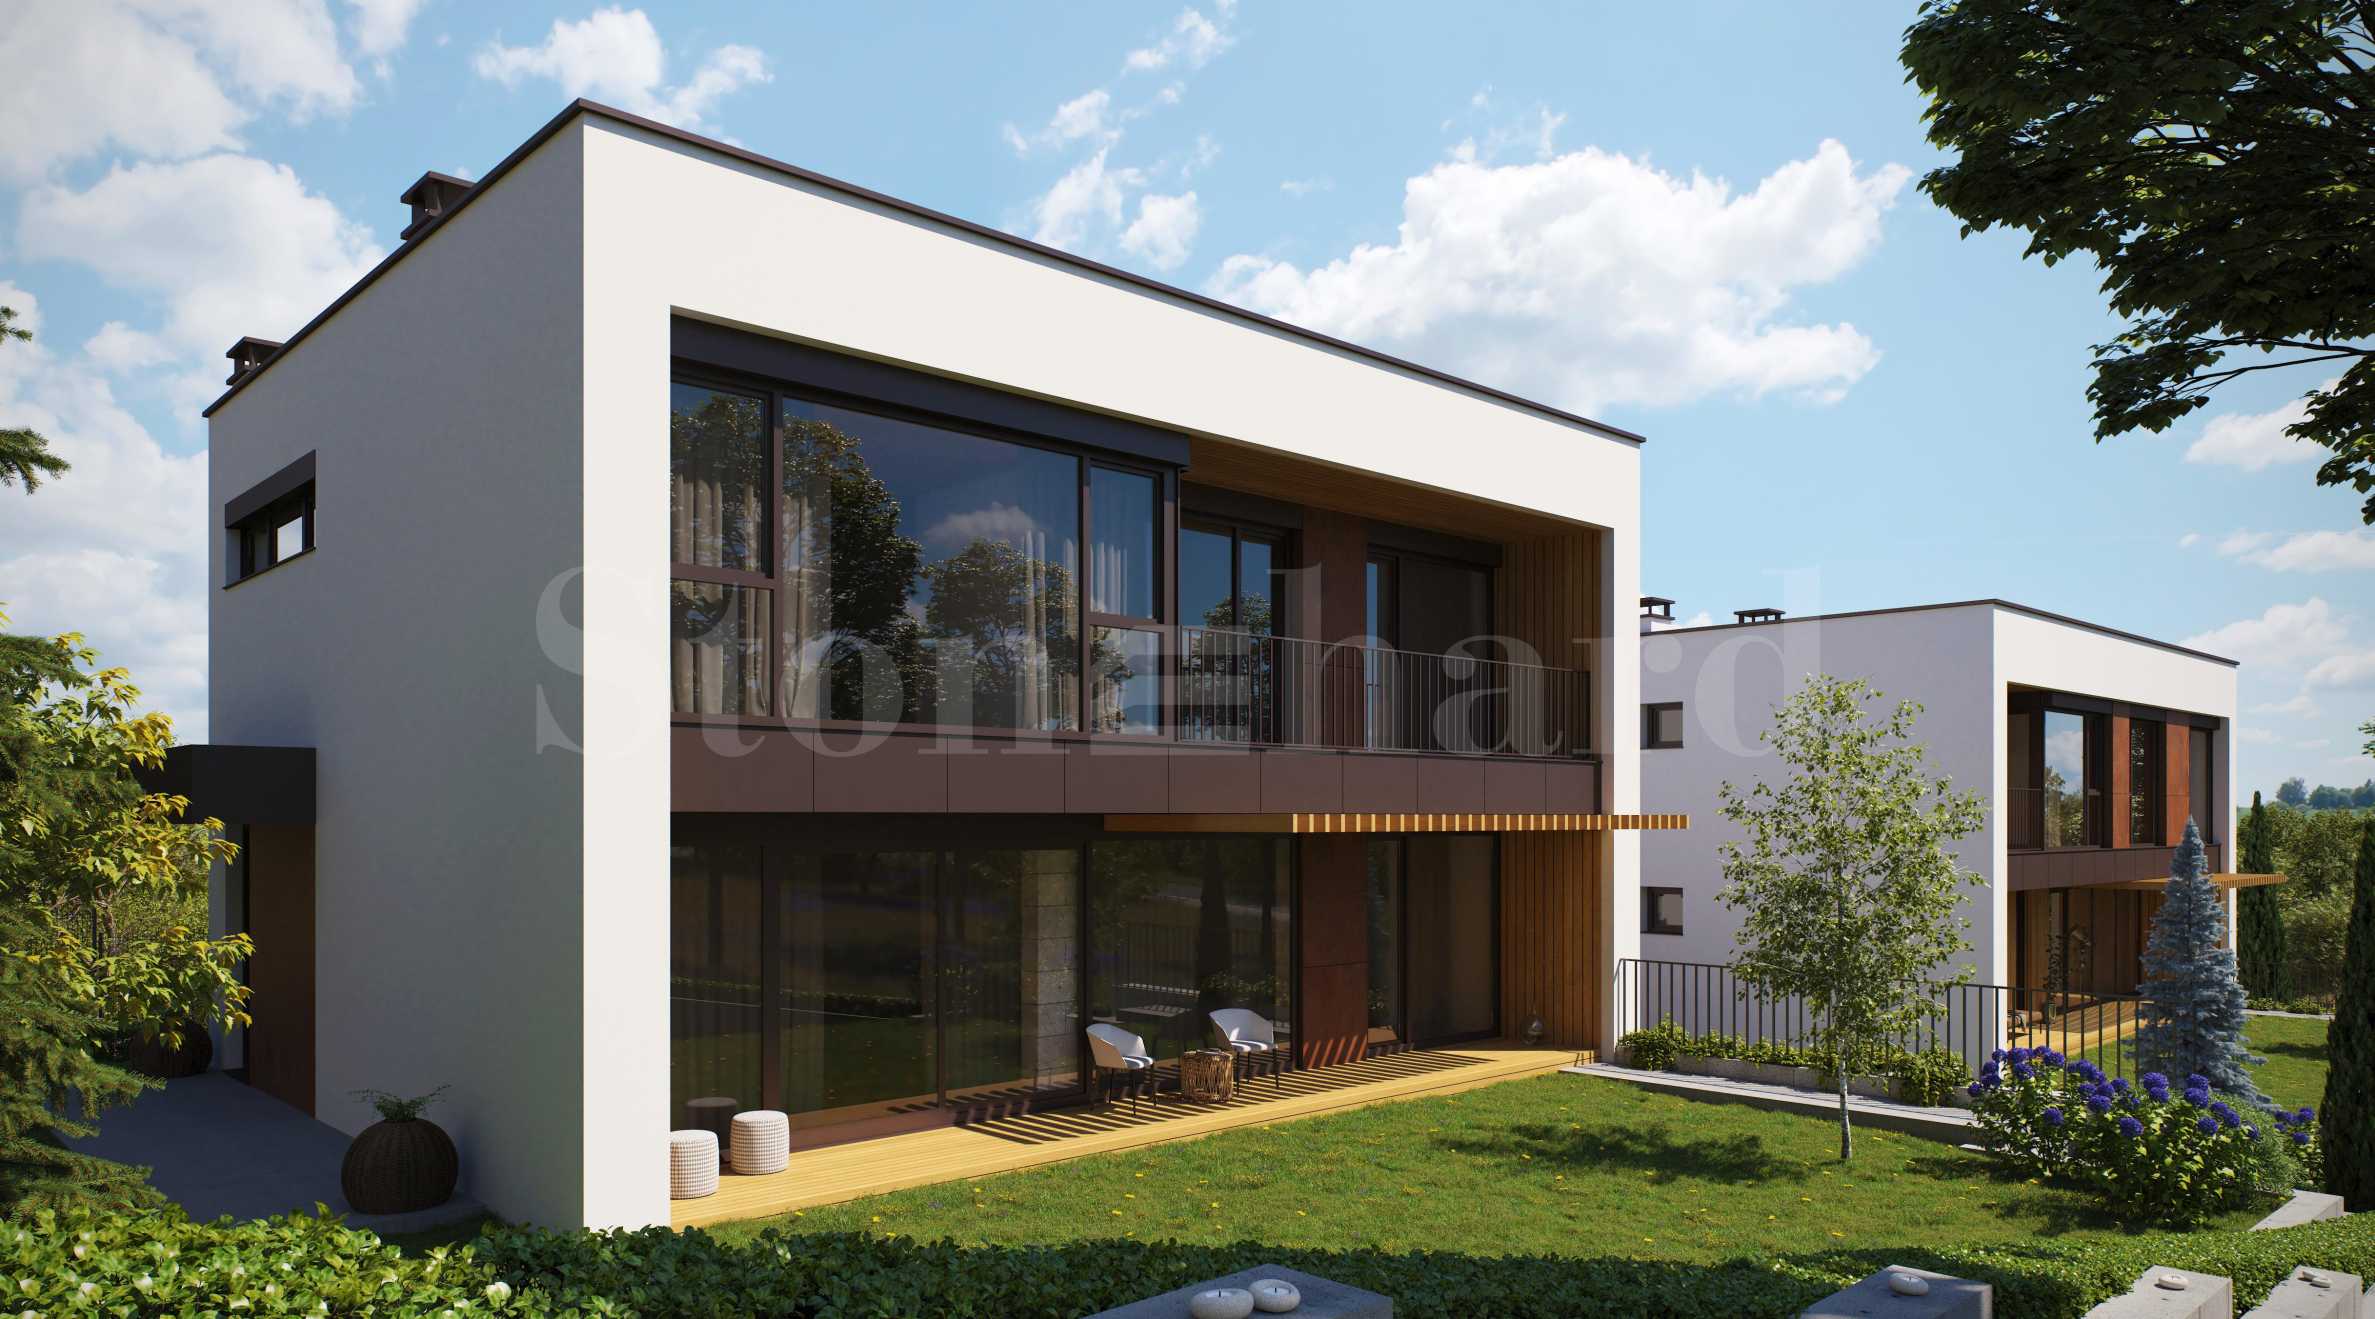 Еднофамилни къщи със собствен двор в нов комплекс в полите на Витоша2 - Stonehard